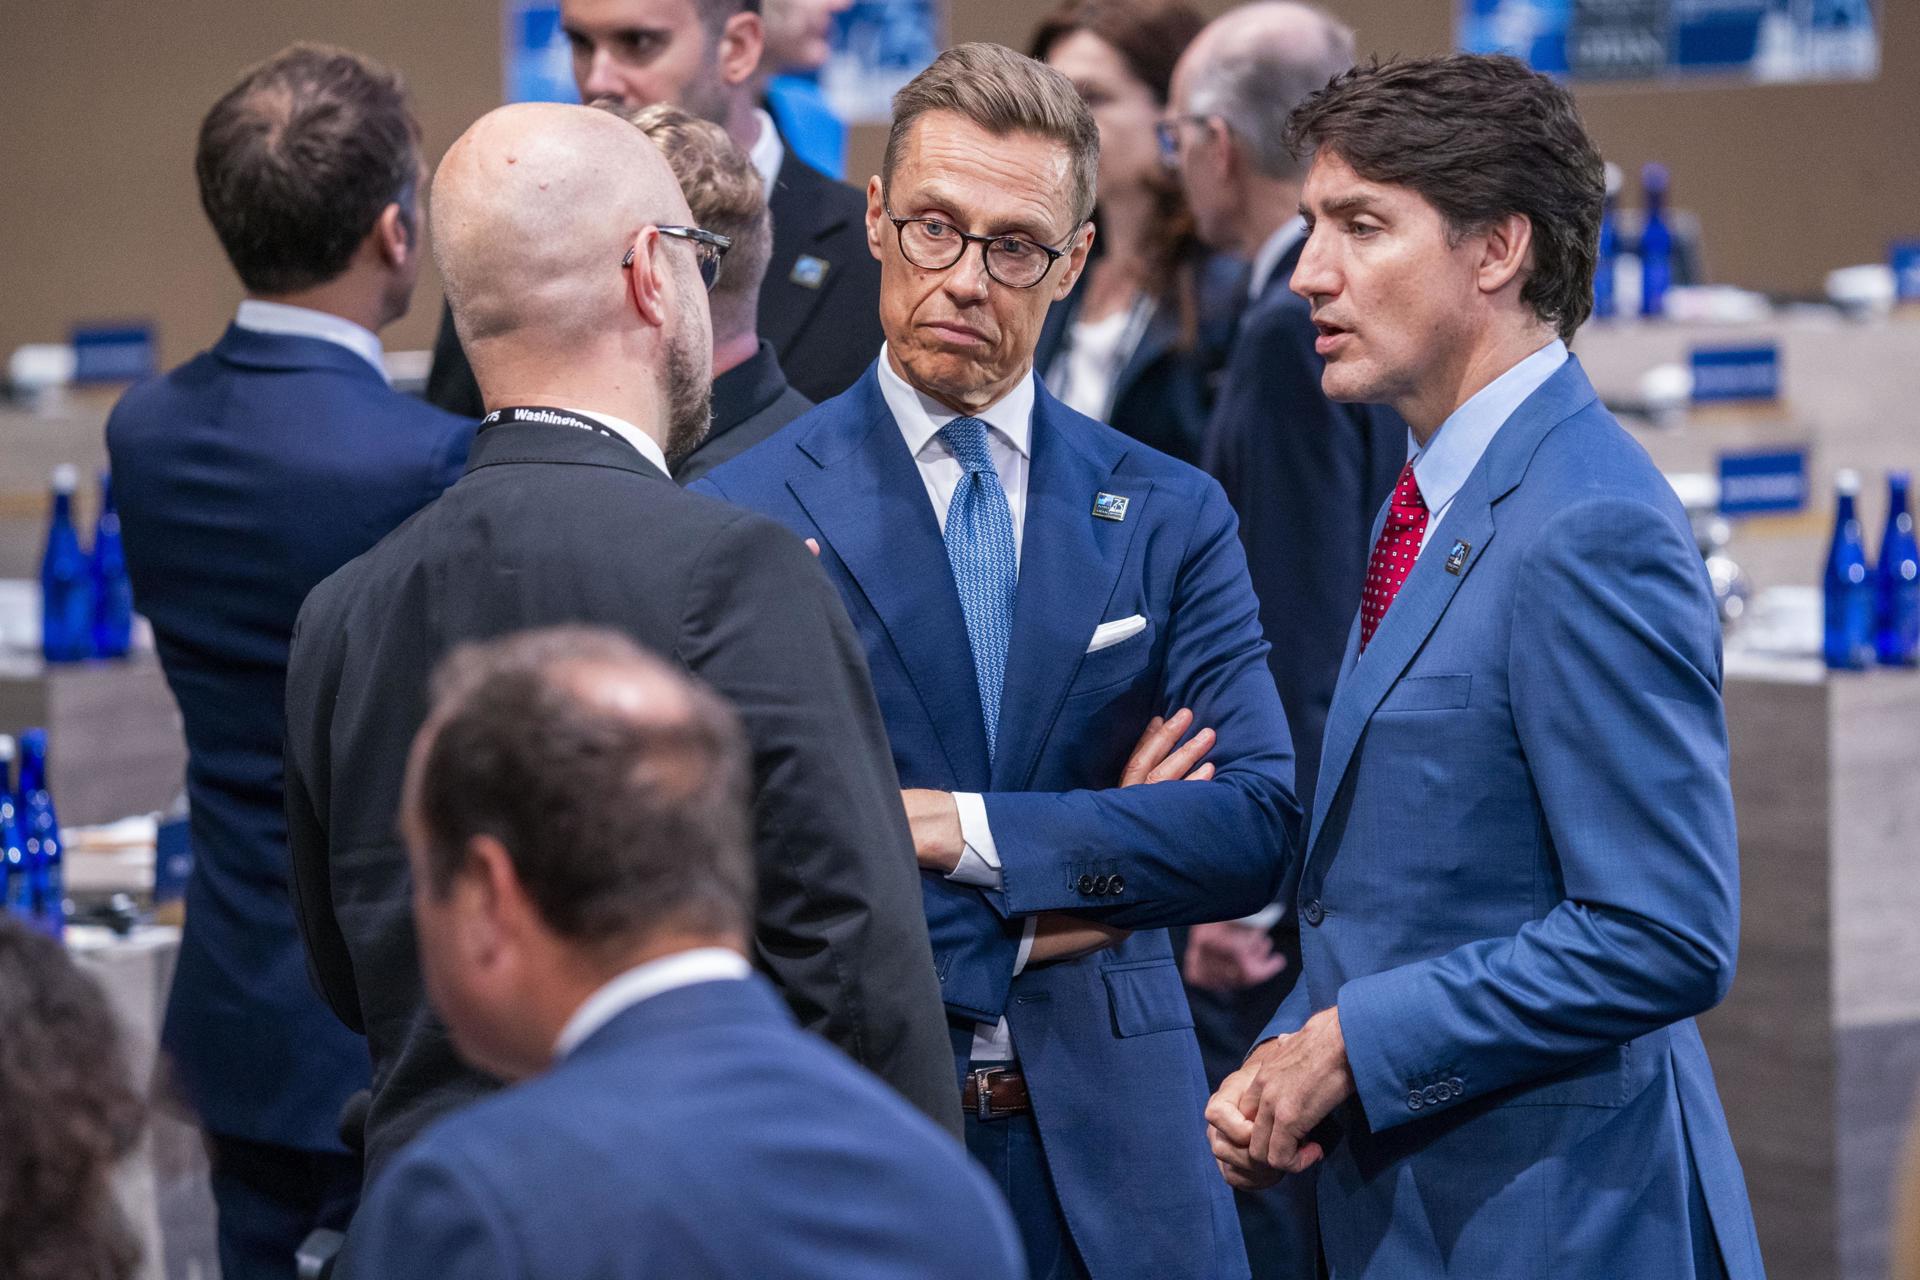 El Primer Ministro de Canadá, Justin Trudeau (d), y el Presidente de Finlandia, Alexander Stubb (c), conversan antes de la reunión del Consejo del Atlántico Norte en la Cumbre del 75º Aniversario de la OTAN en Washington, DC , EE. UU. EFE/Shawn Thew